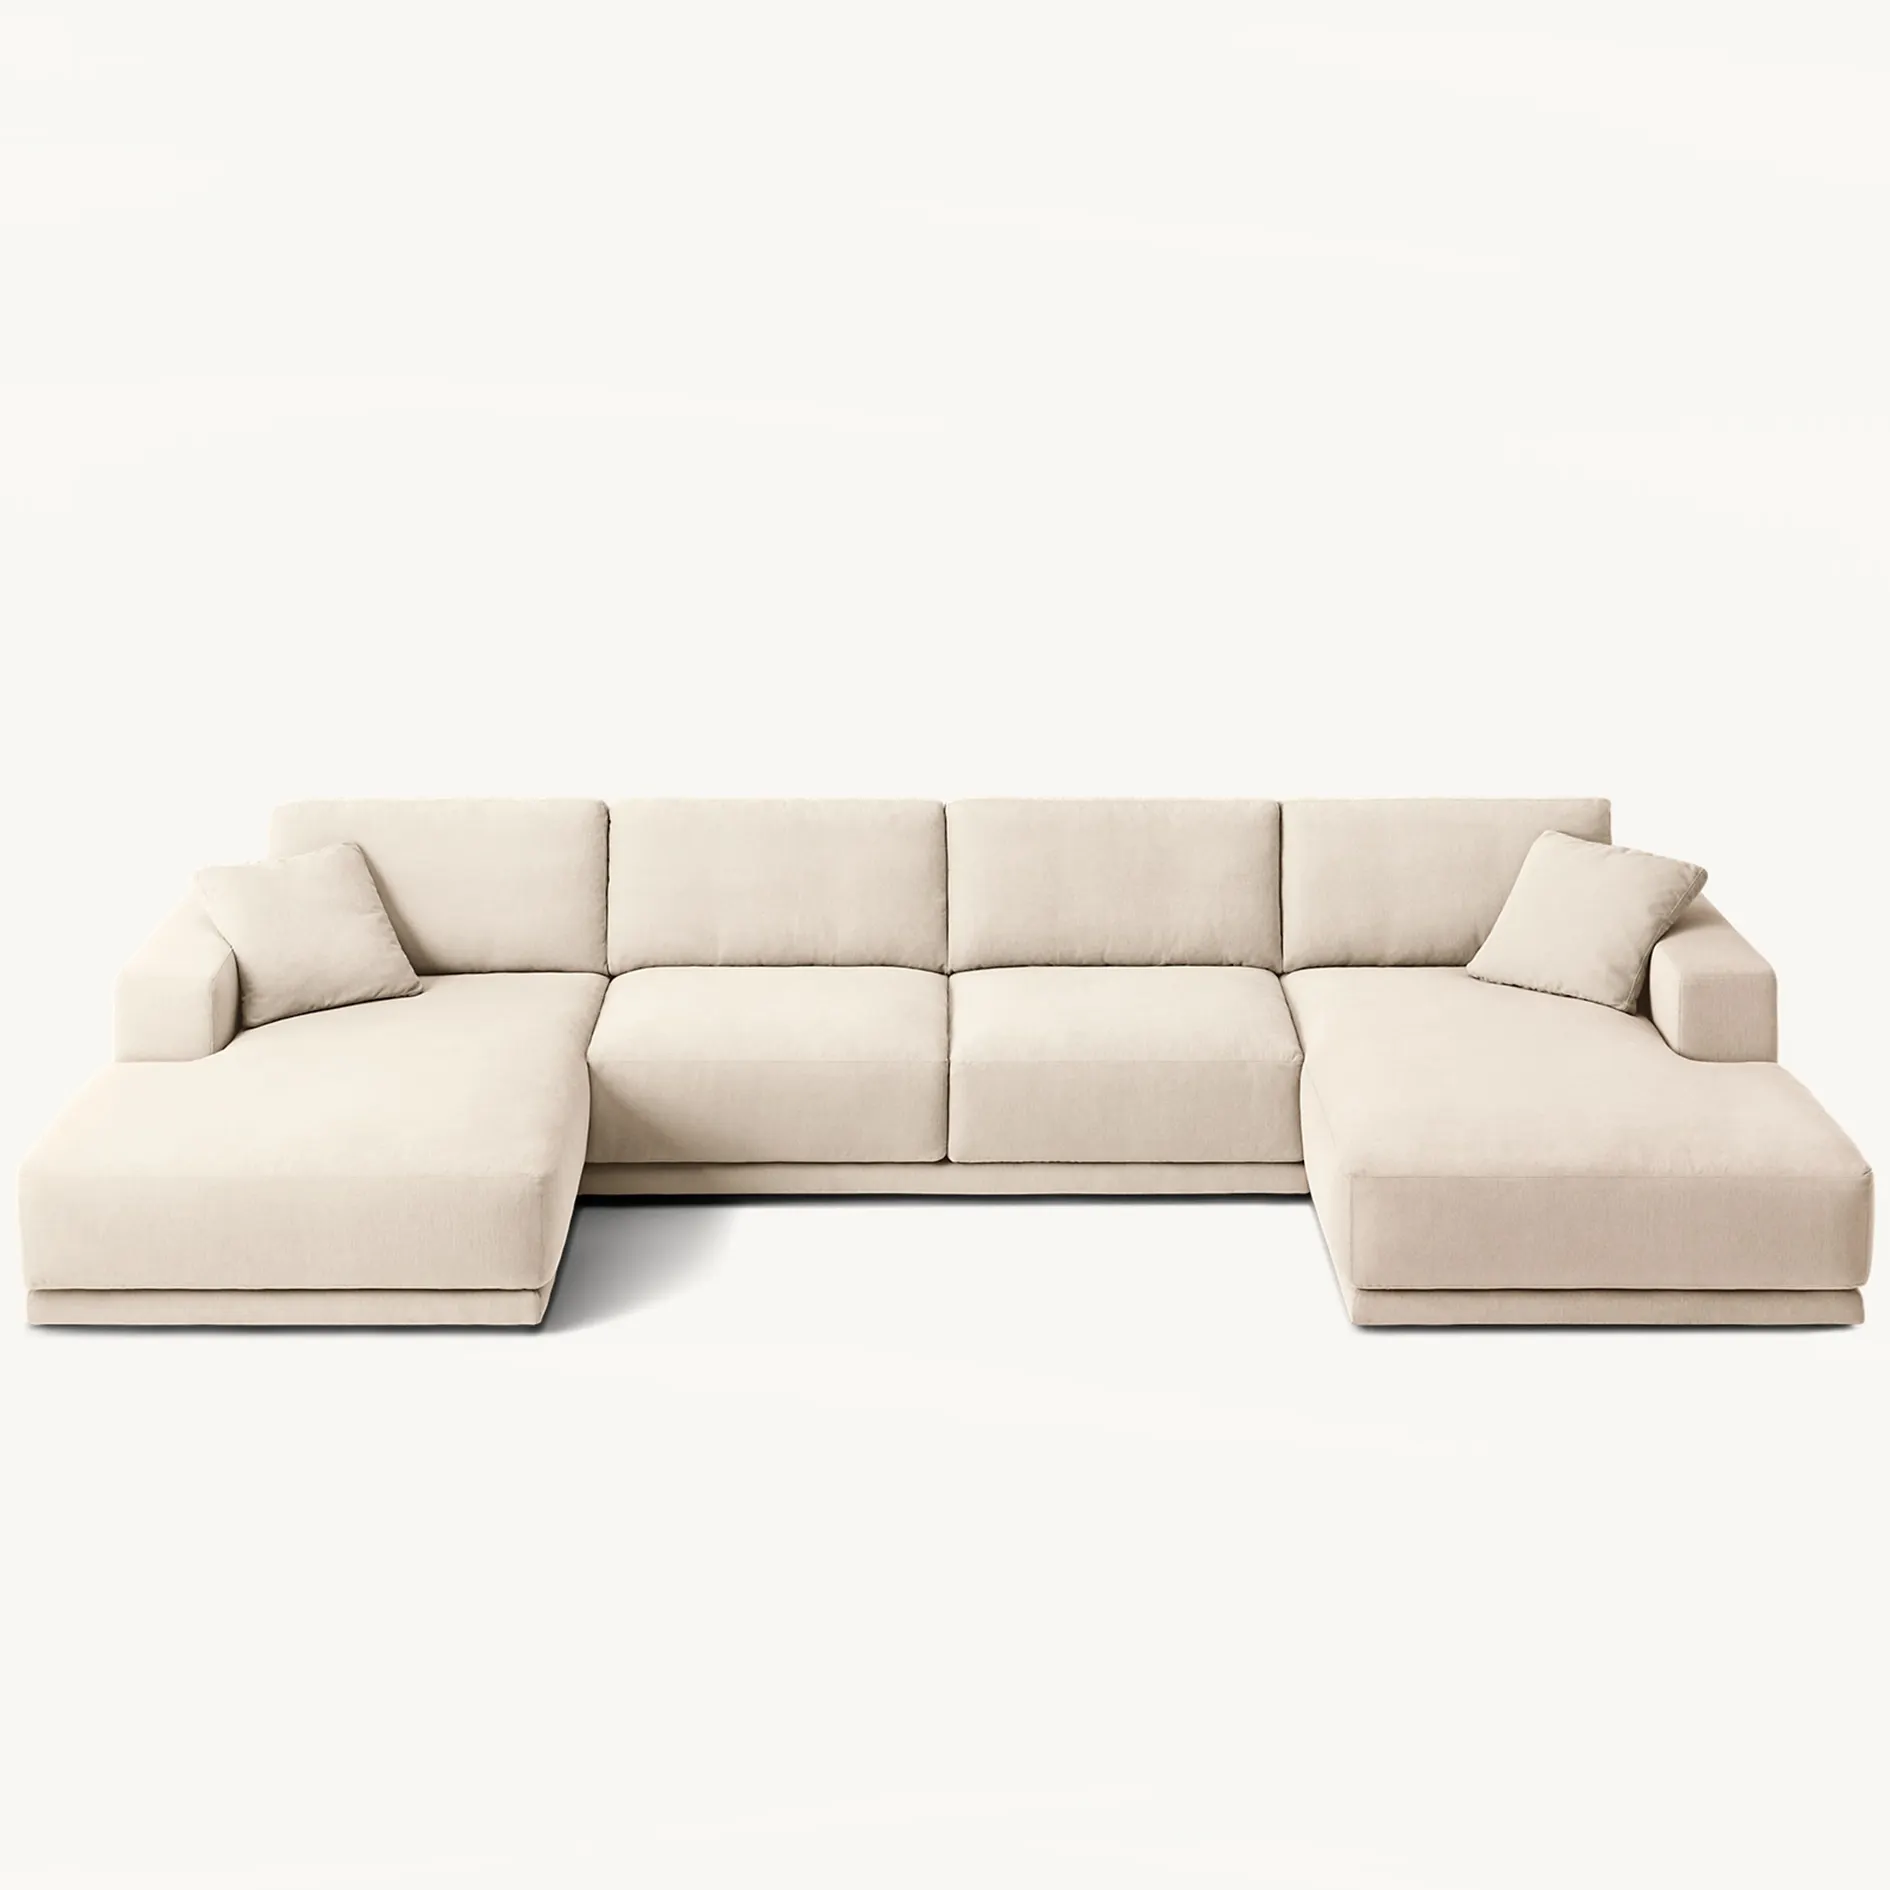 Handgemaakte Hoge Kwaliteit Indoor Luxe Chaise Lounge Zachte Moderne U-Vormige Bank Woonkamer Meubels